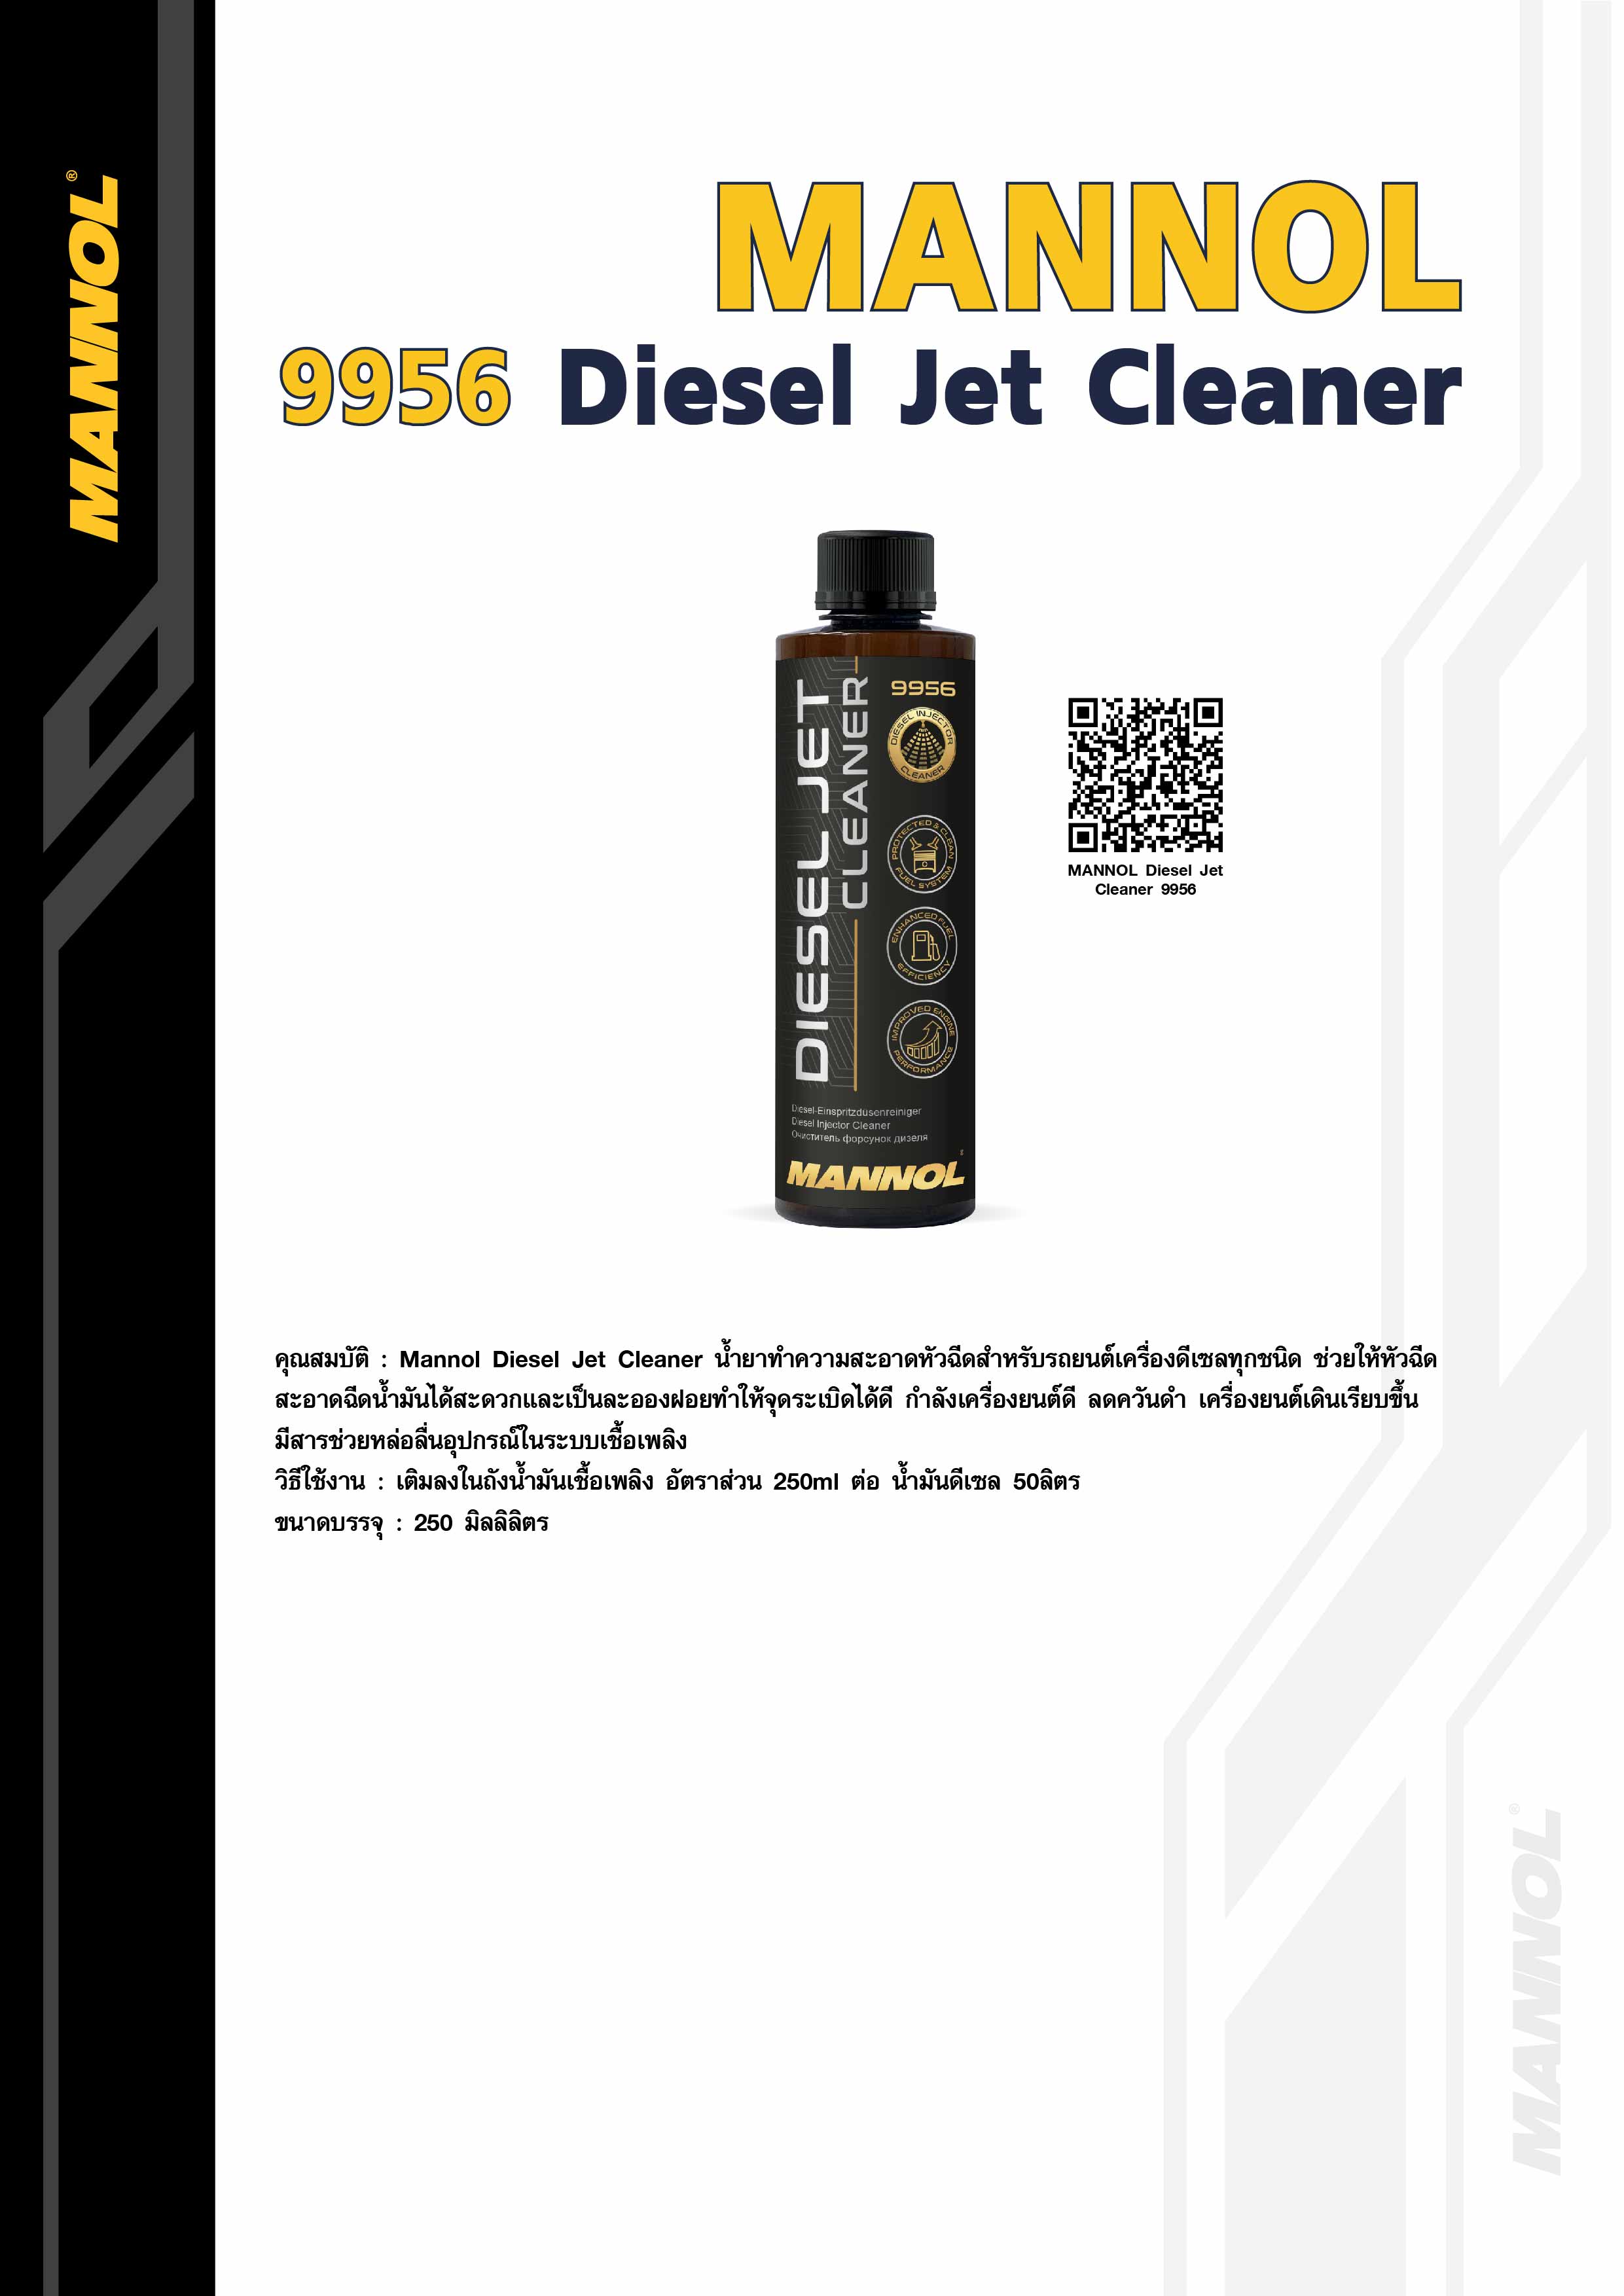 MANNOL Diesel Jet Cleaner 9956